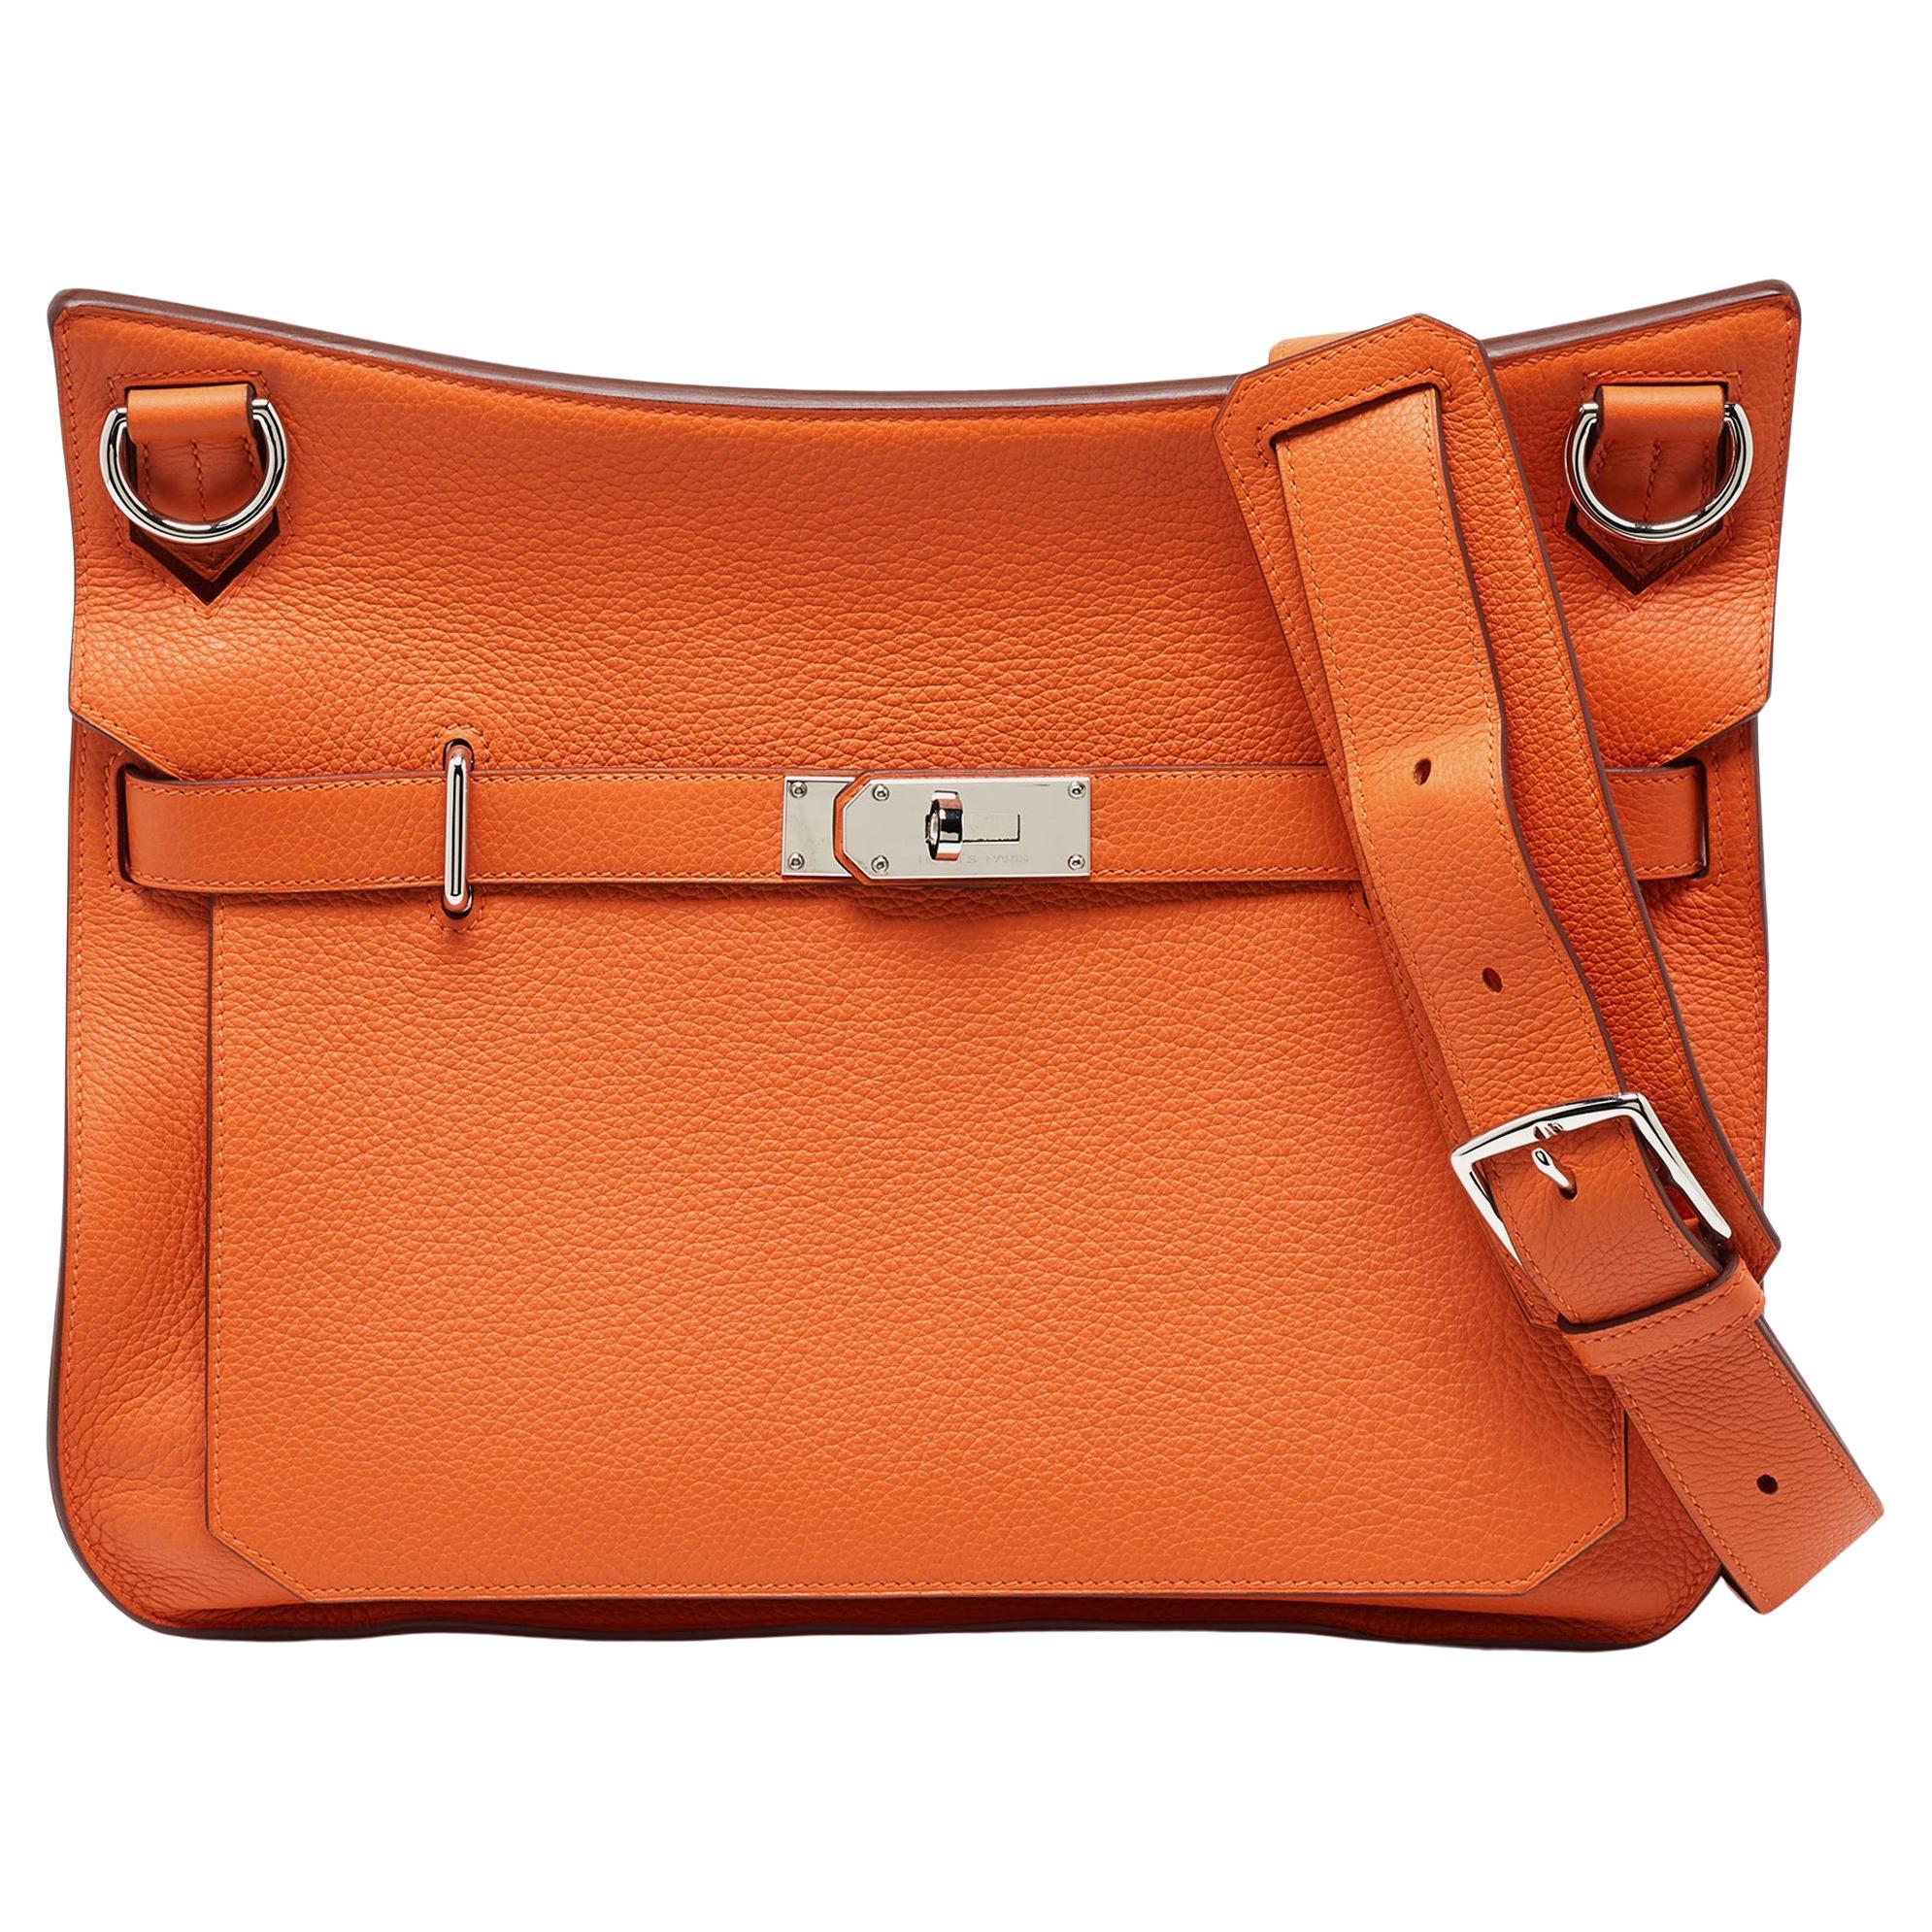 Hermès Orange Togo Leather Palladium Finish Jypsiere 37 Bag For Sale